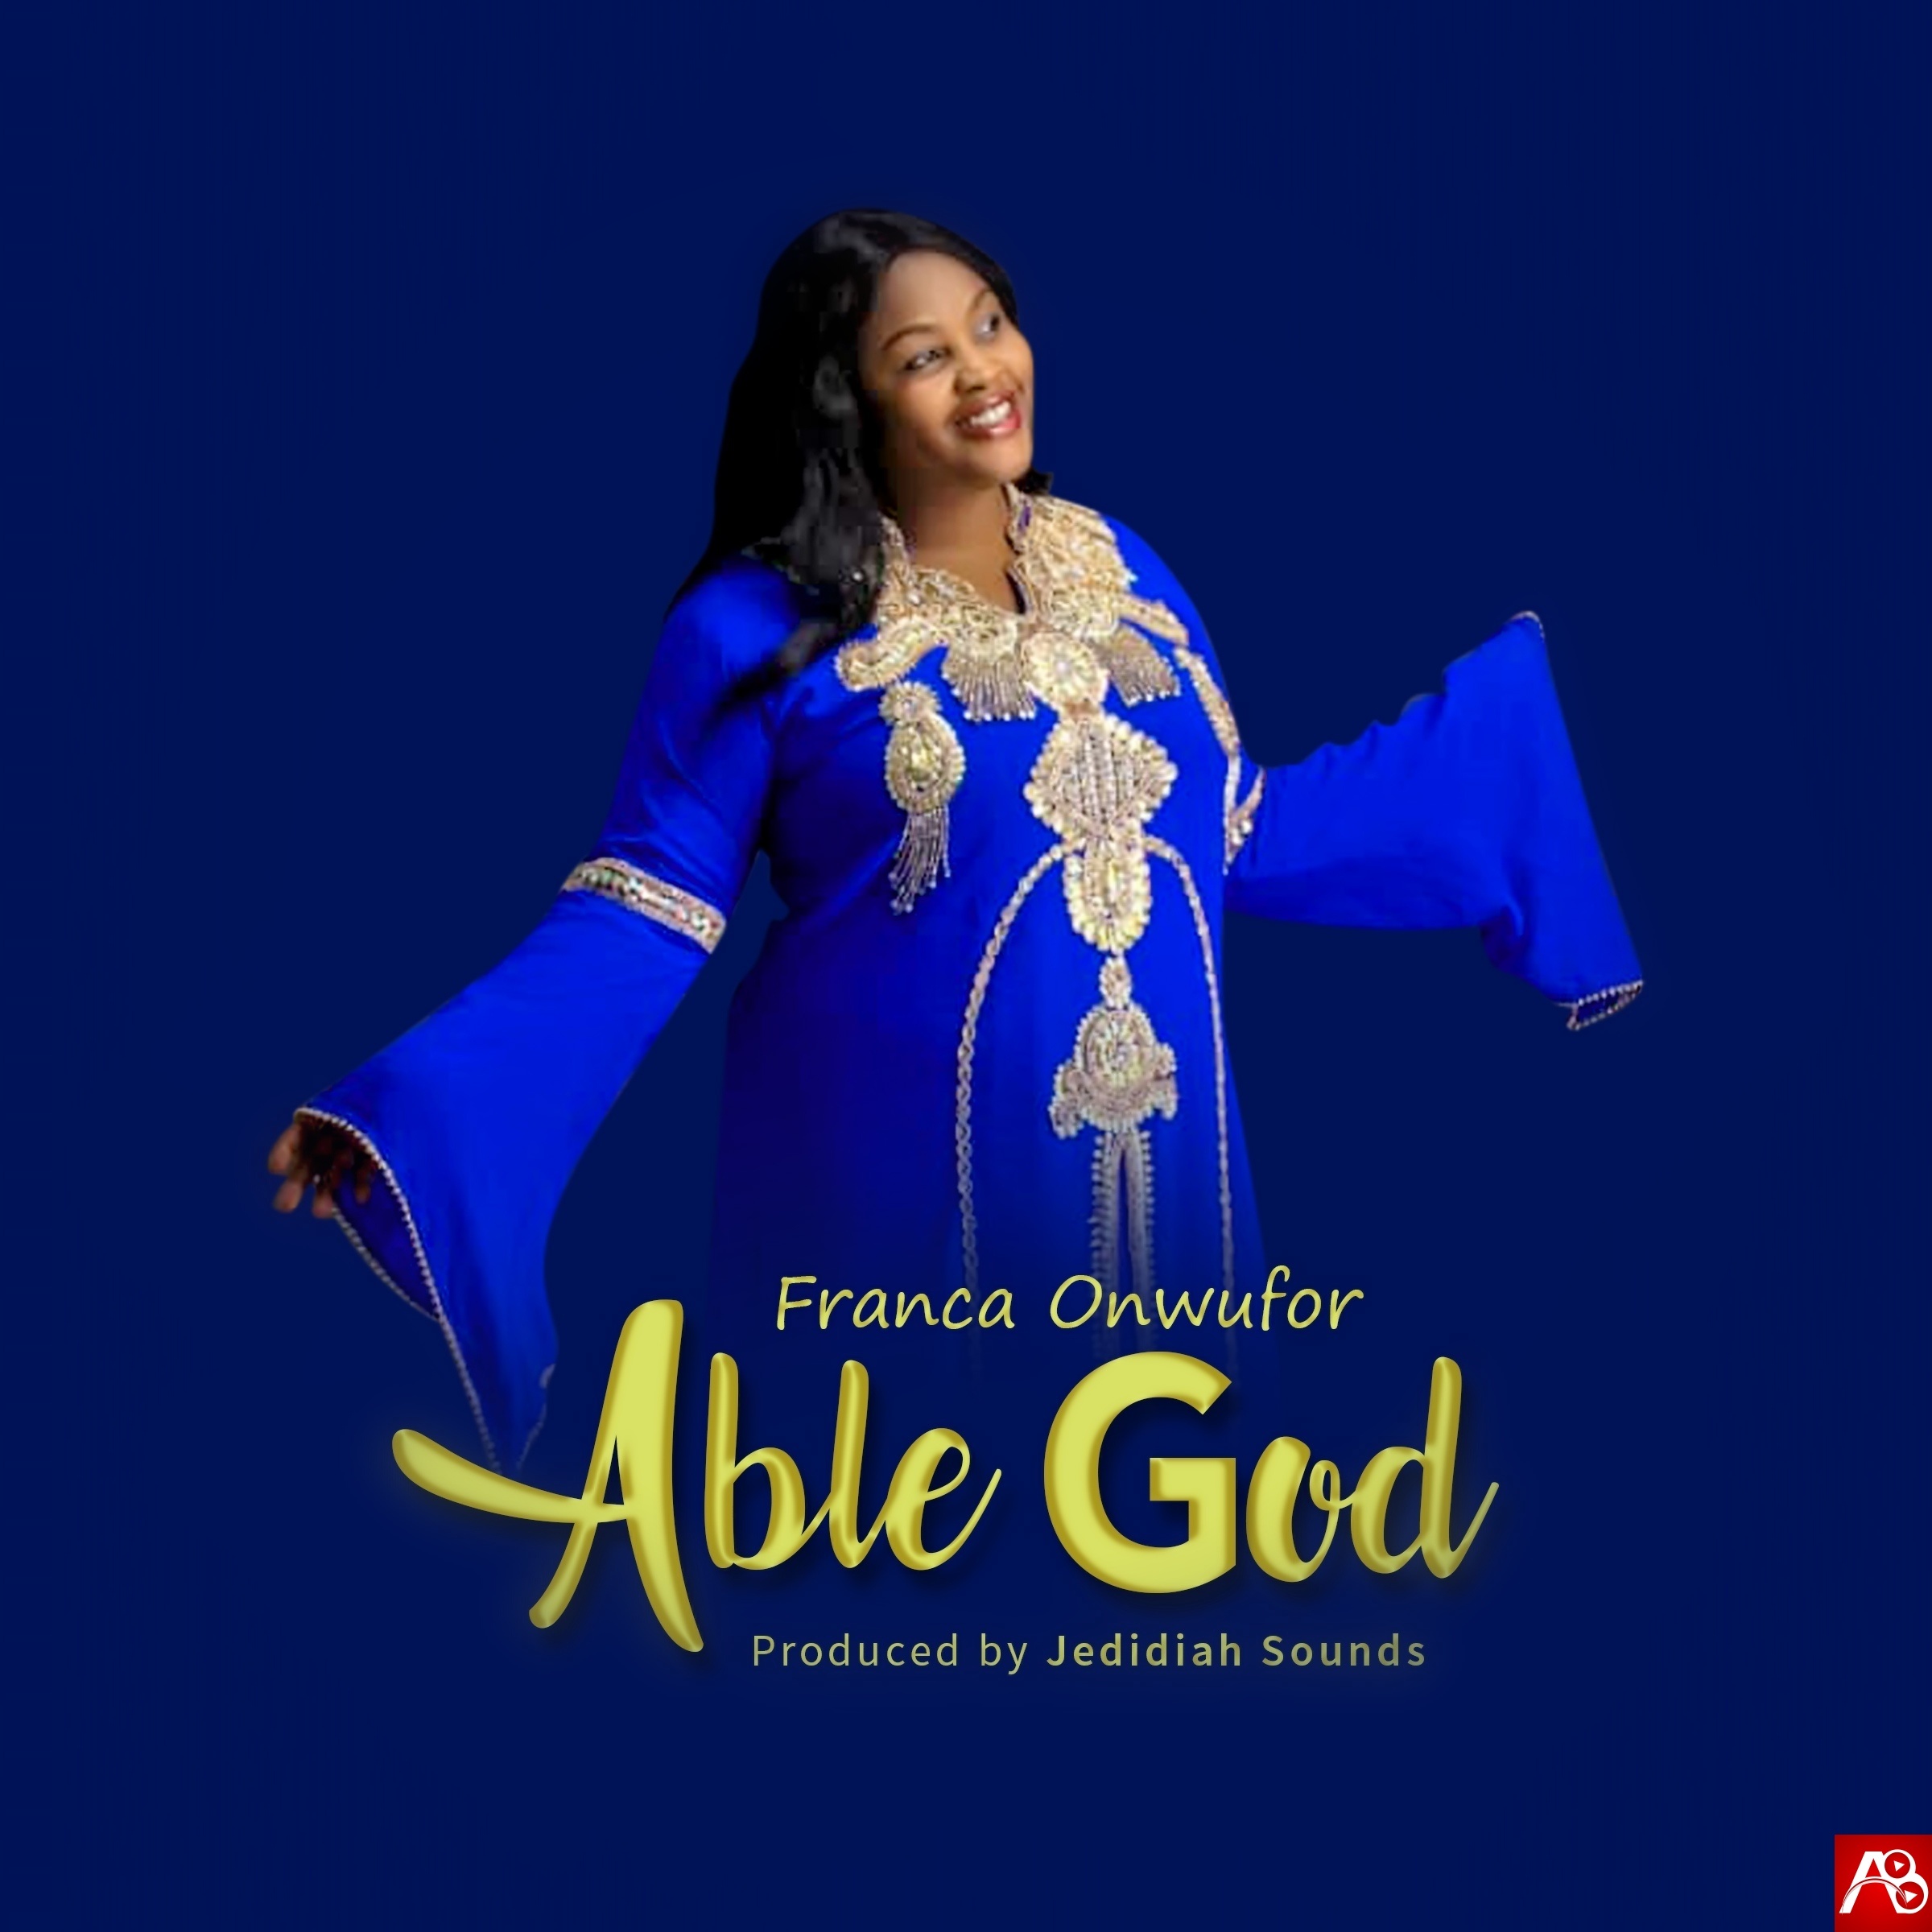 Franca Onwufor,Able God